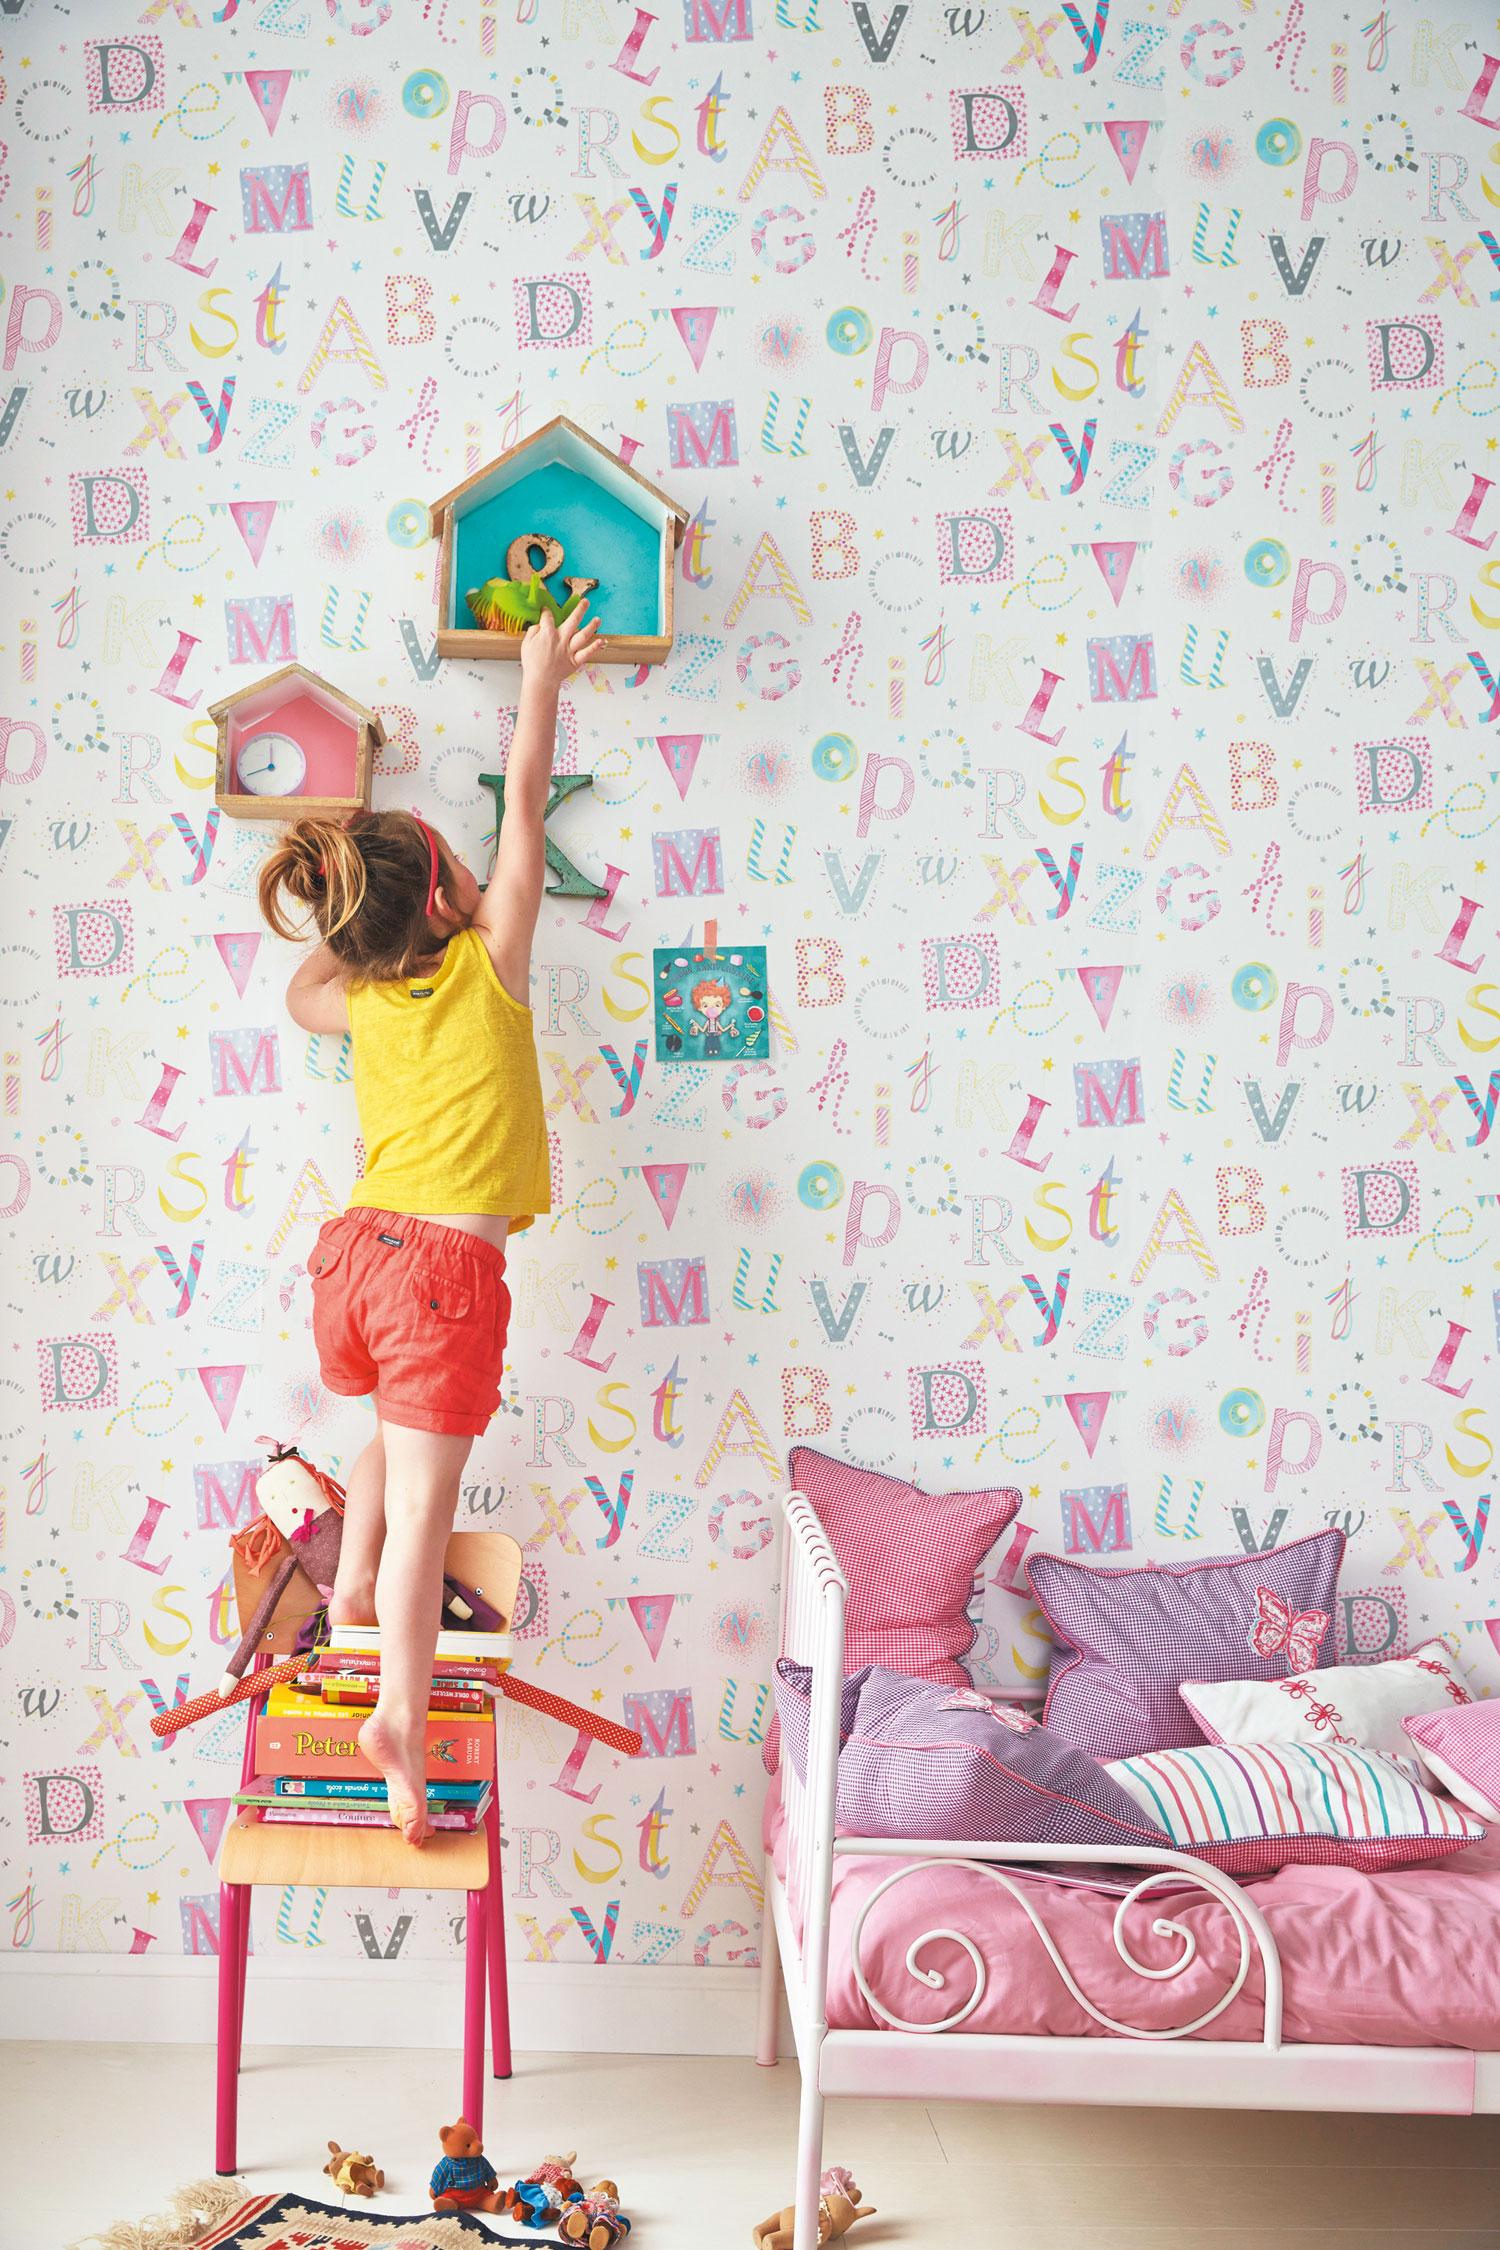 Bunte Mädchentapete mit farbigen Buchstaben #mädchenzimmer #wandgestaltungkinderzimmer ©Camengo